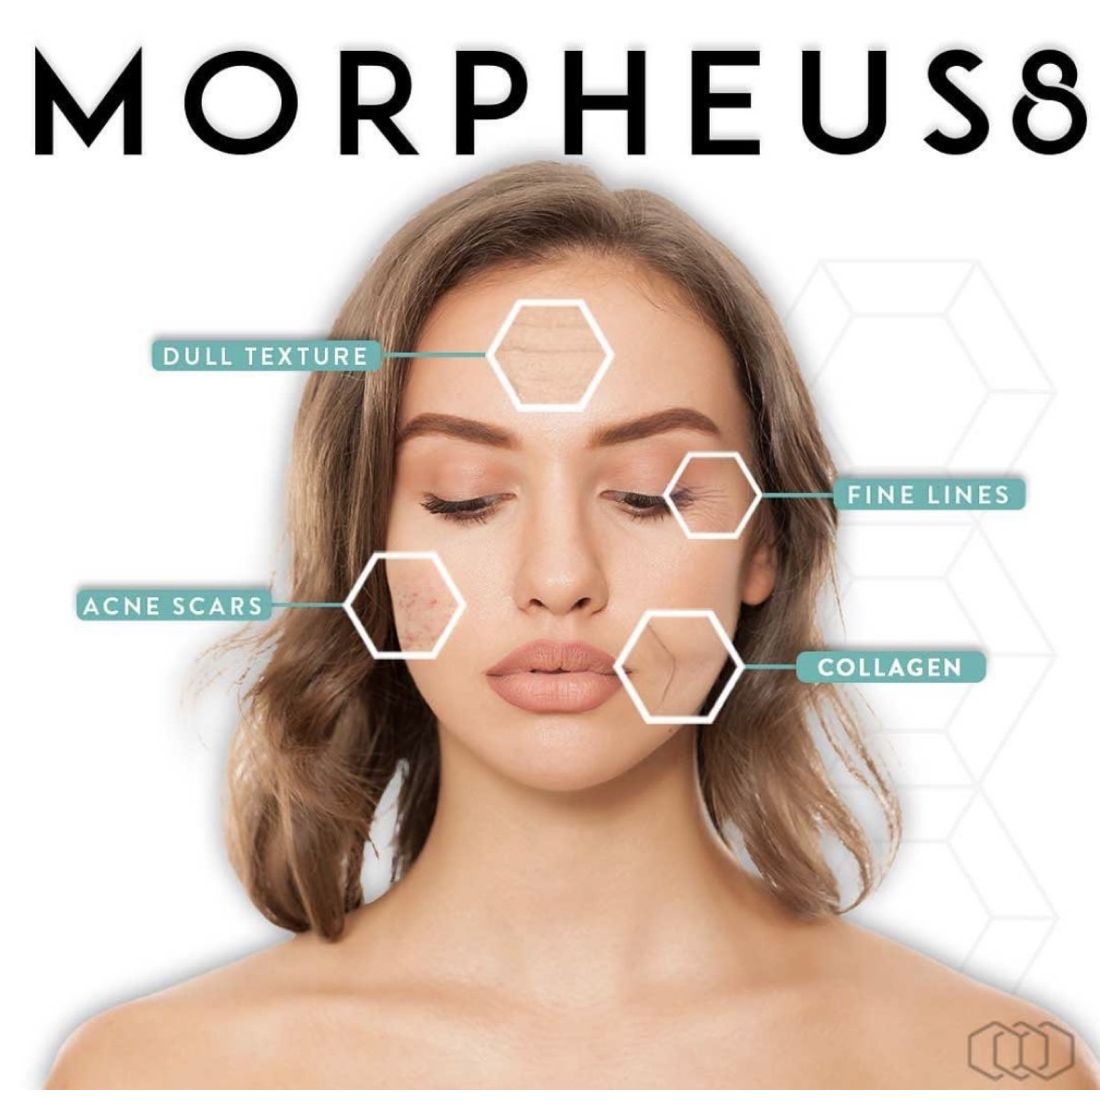 Morpheus8 Microneedling Fractional Treatment for Skin Rejuvenation